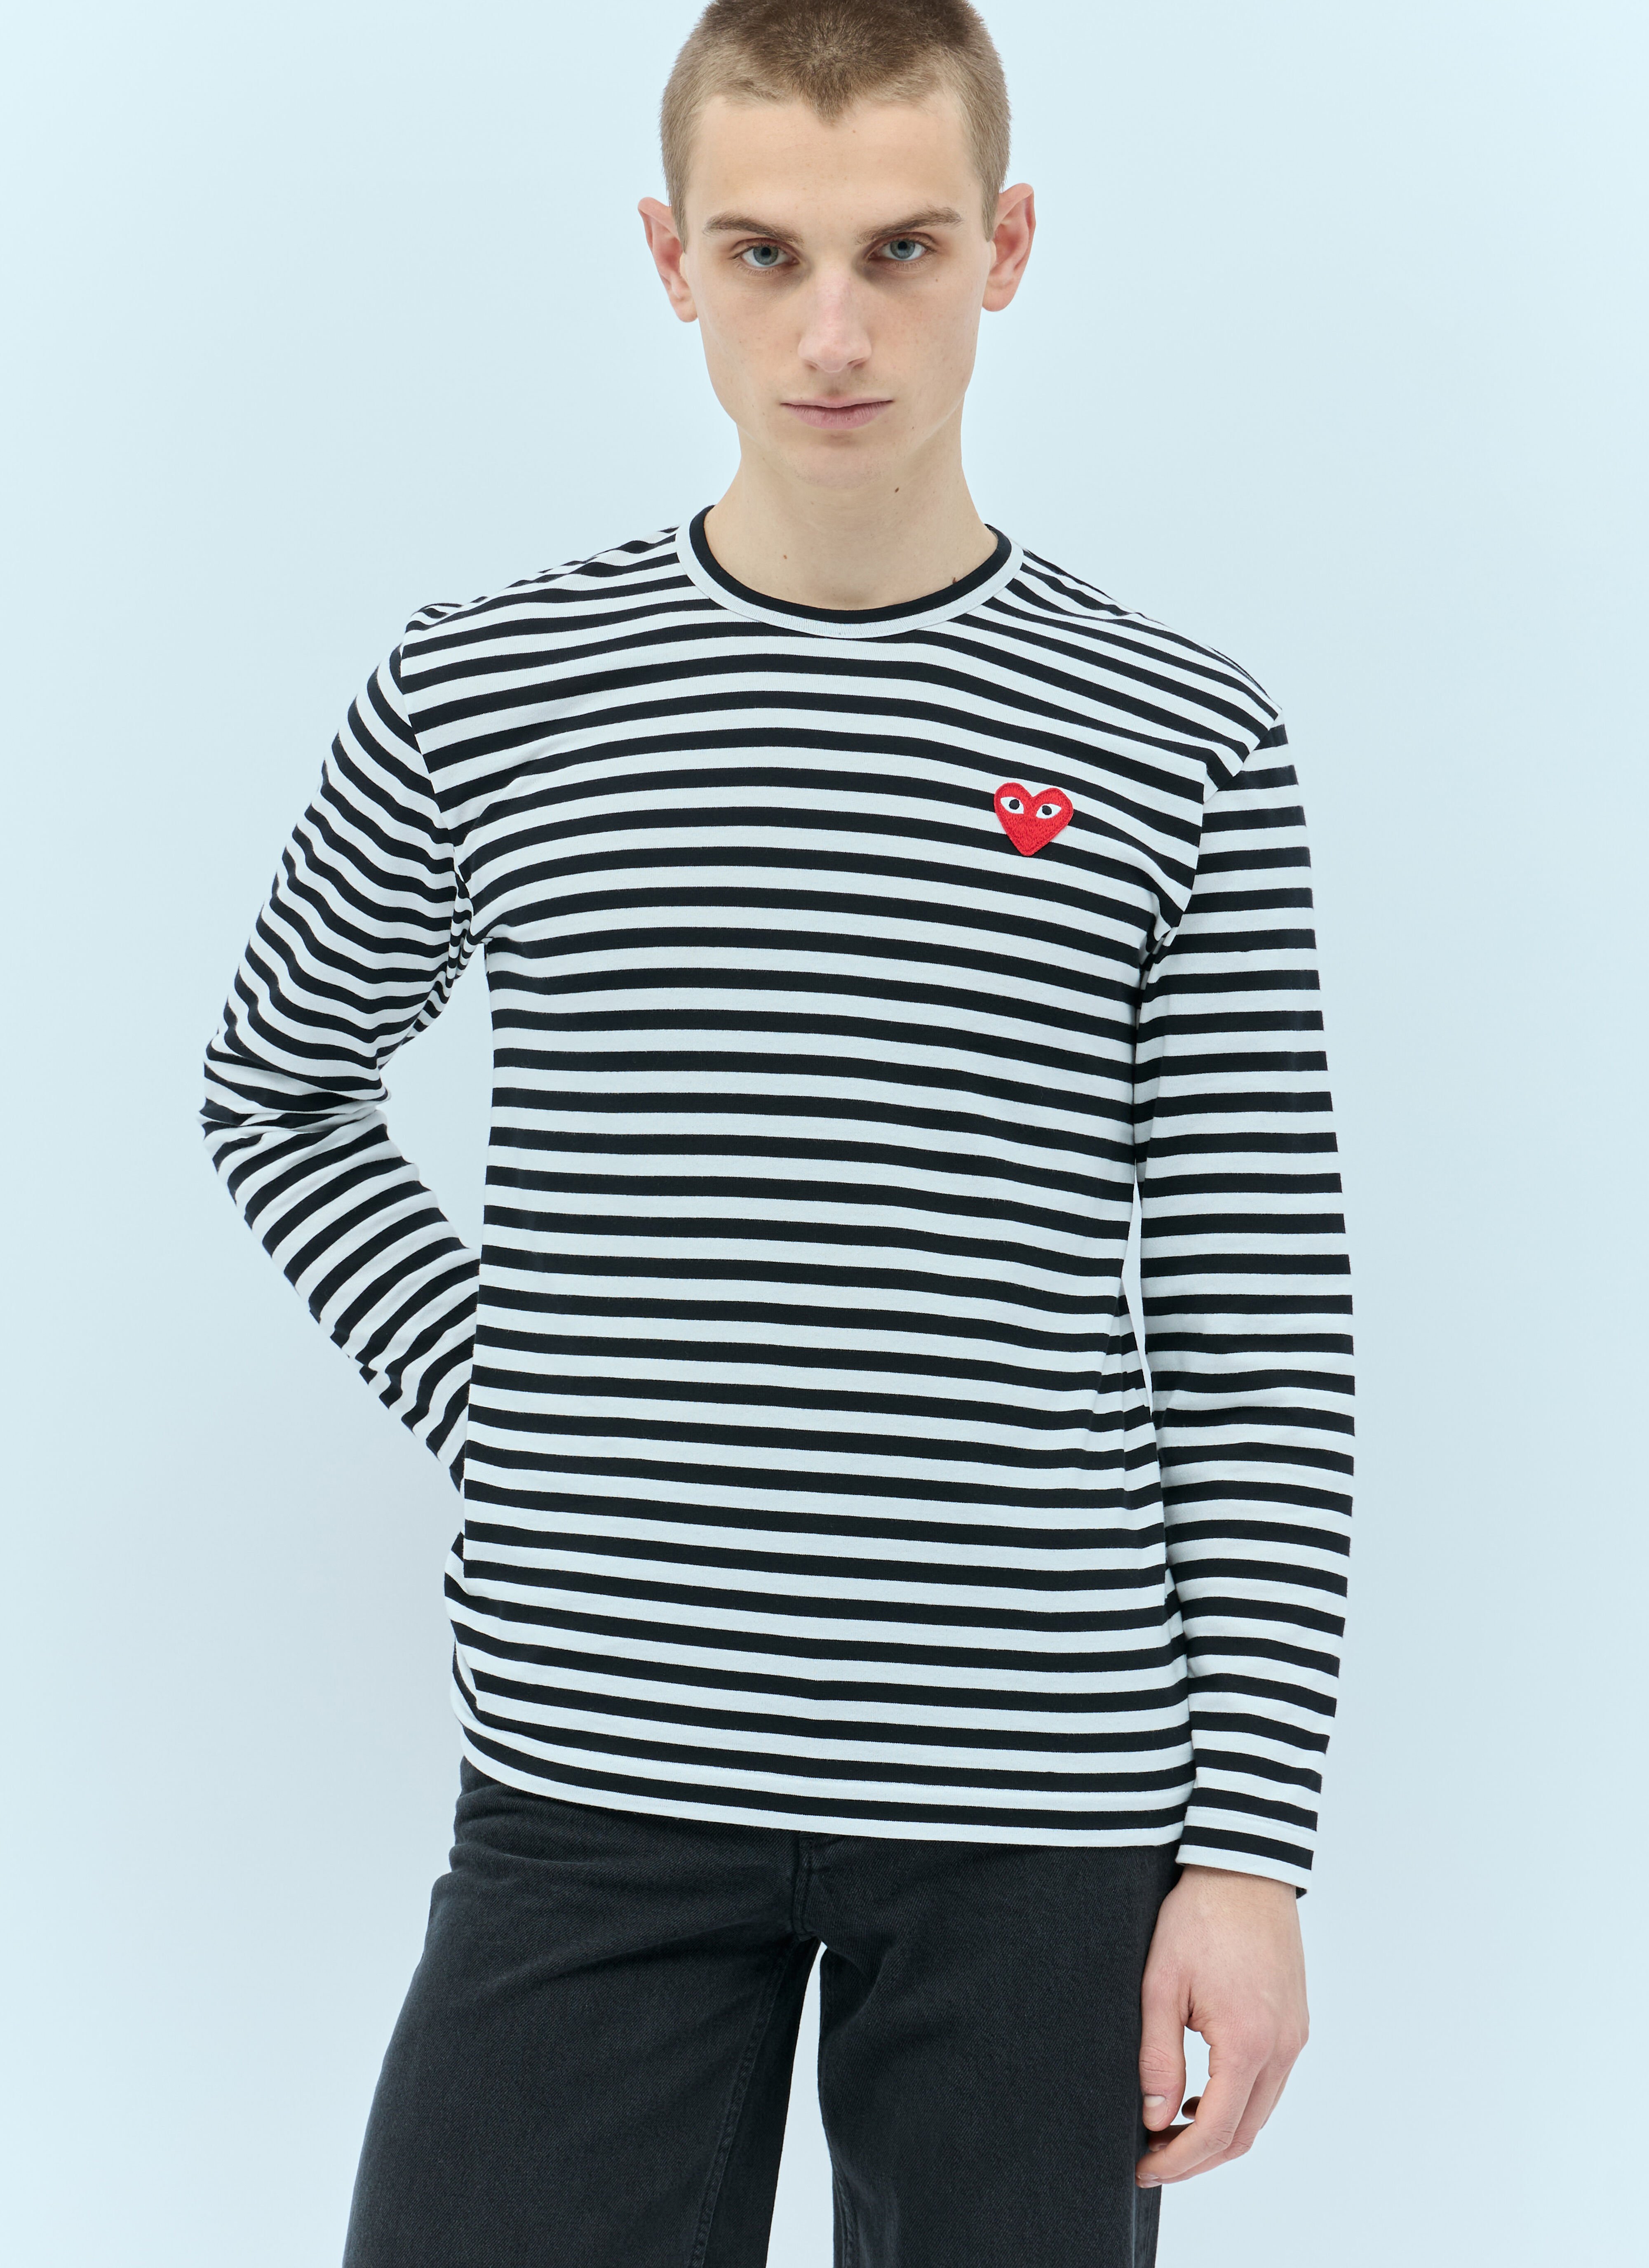 Jean Paul Gaultier Striped Long-Sleeve T-Shirt Blue jpg0256014